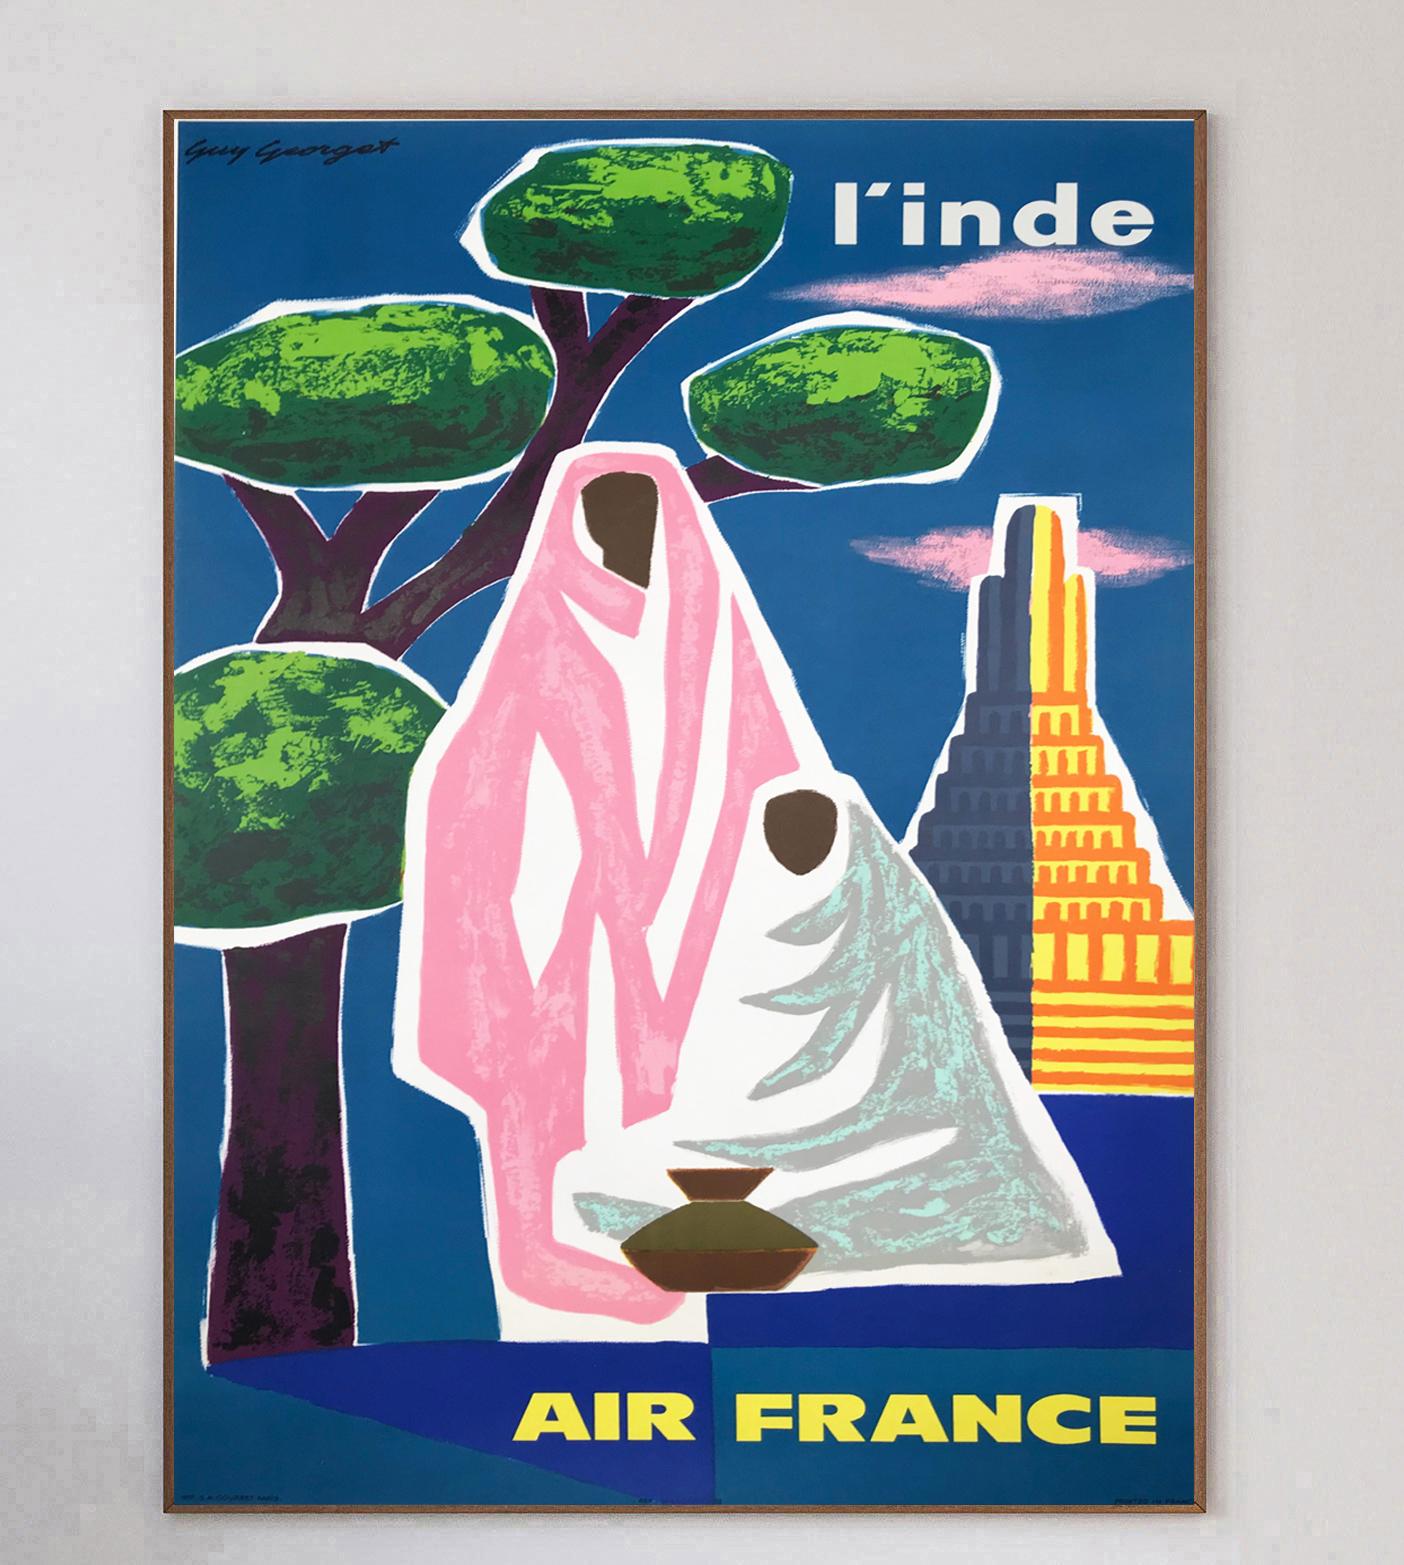 Dieses Plakat, das von dem französischen Künstler Guy Georget gestaltet wurde, der an vielen Air-France-Plakaten der damaligen Zeit mitgewirkt hat, wirbt für die Routen der Fluggesellschaft nach Indien und wurde 1963 erstellt. Air France wurde 1933